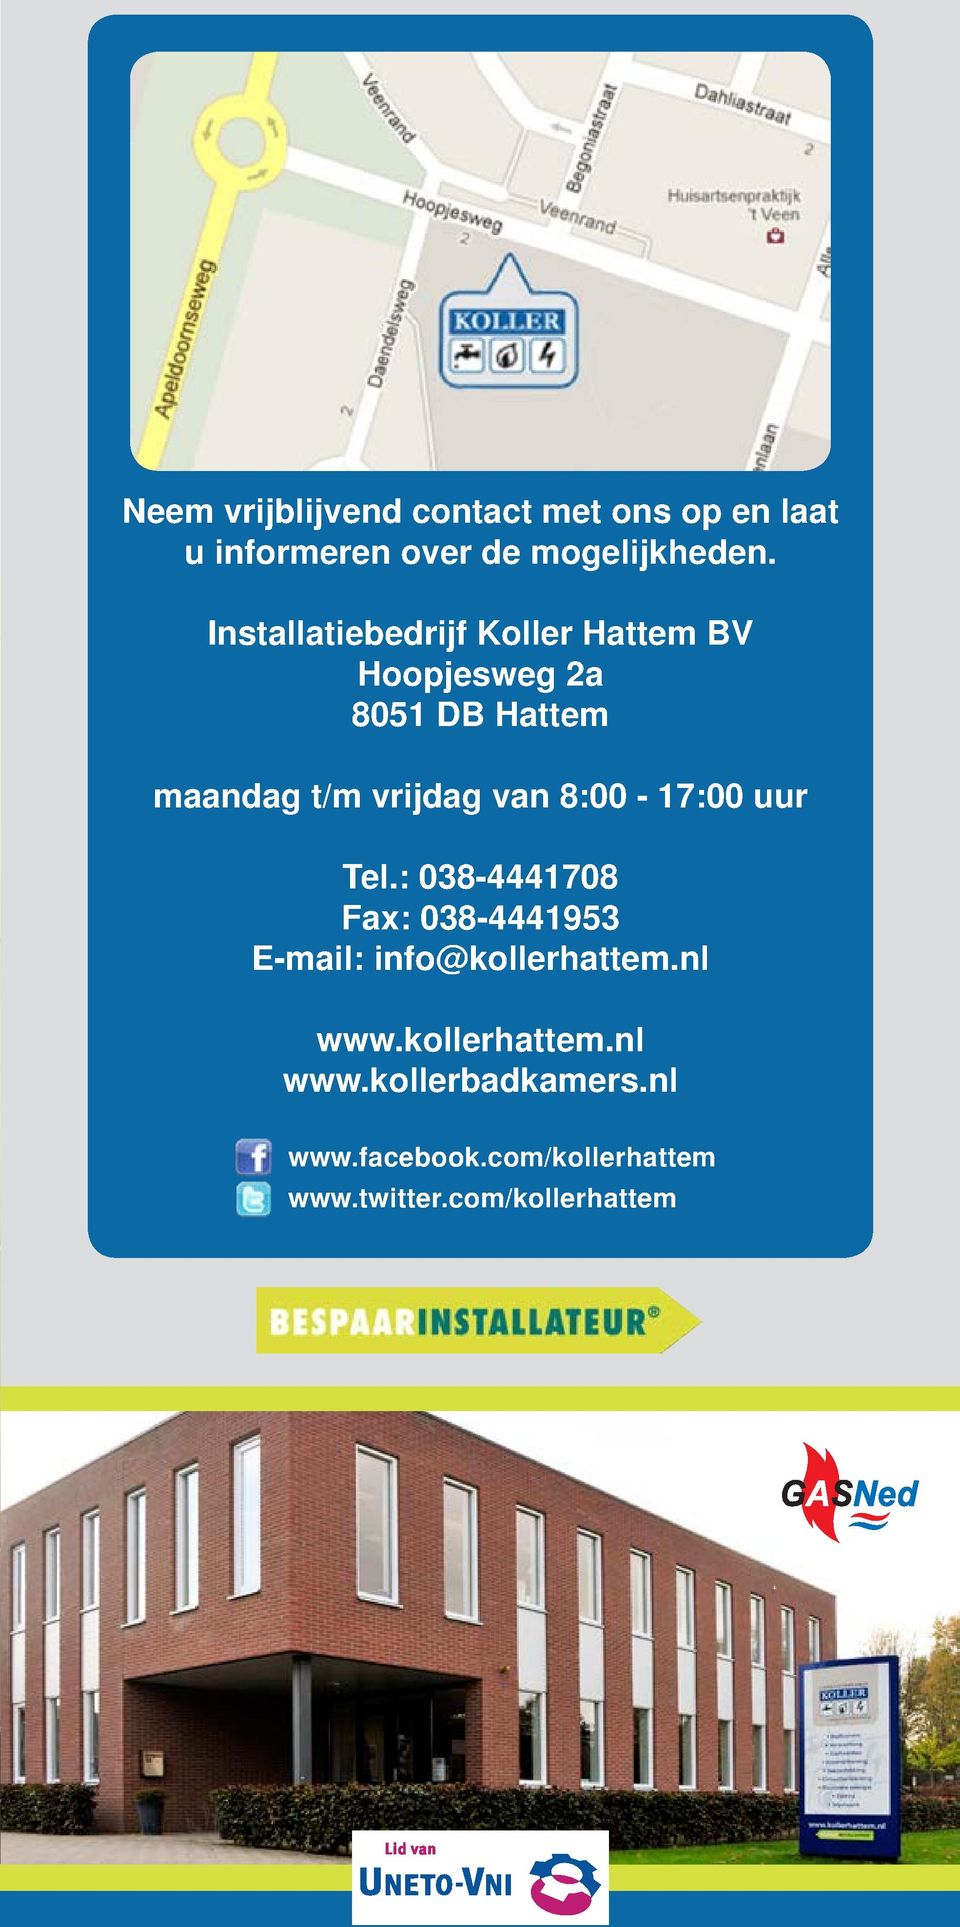 van 8:00-17:00 uur Tel.: 038-4441708 Fax: 038-4441953 E-mail: info@kollerhattem.nl www.